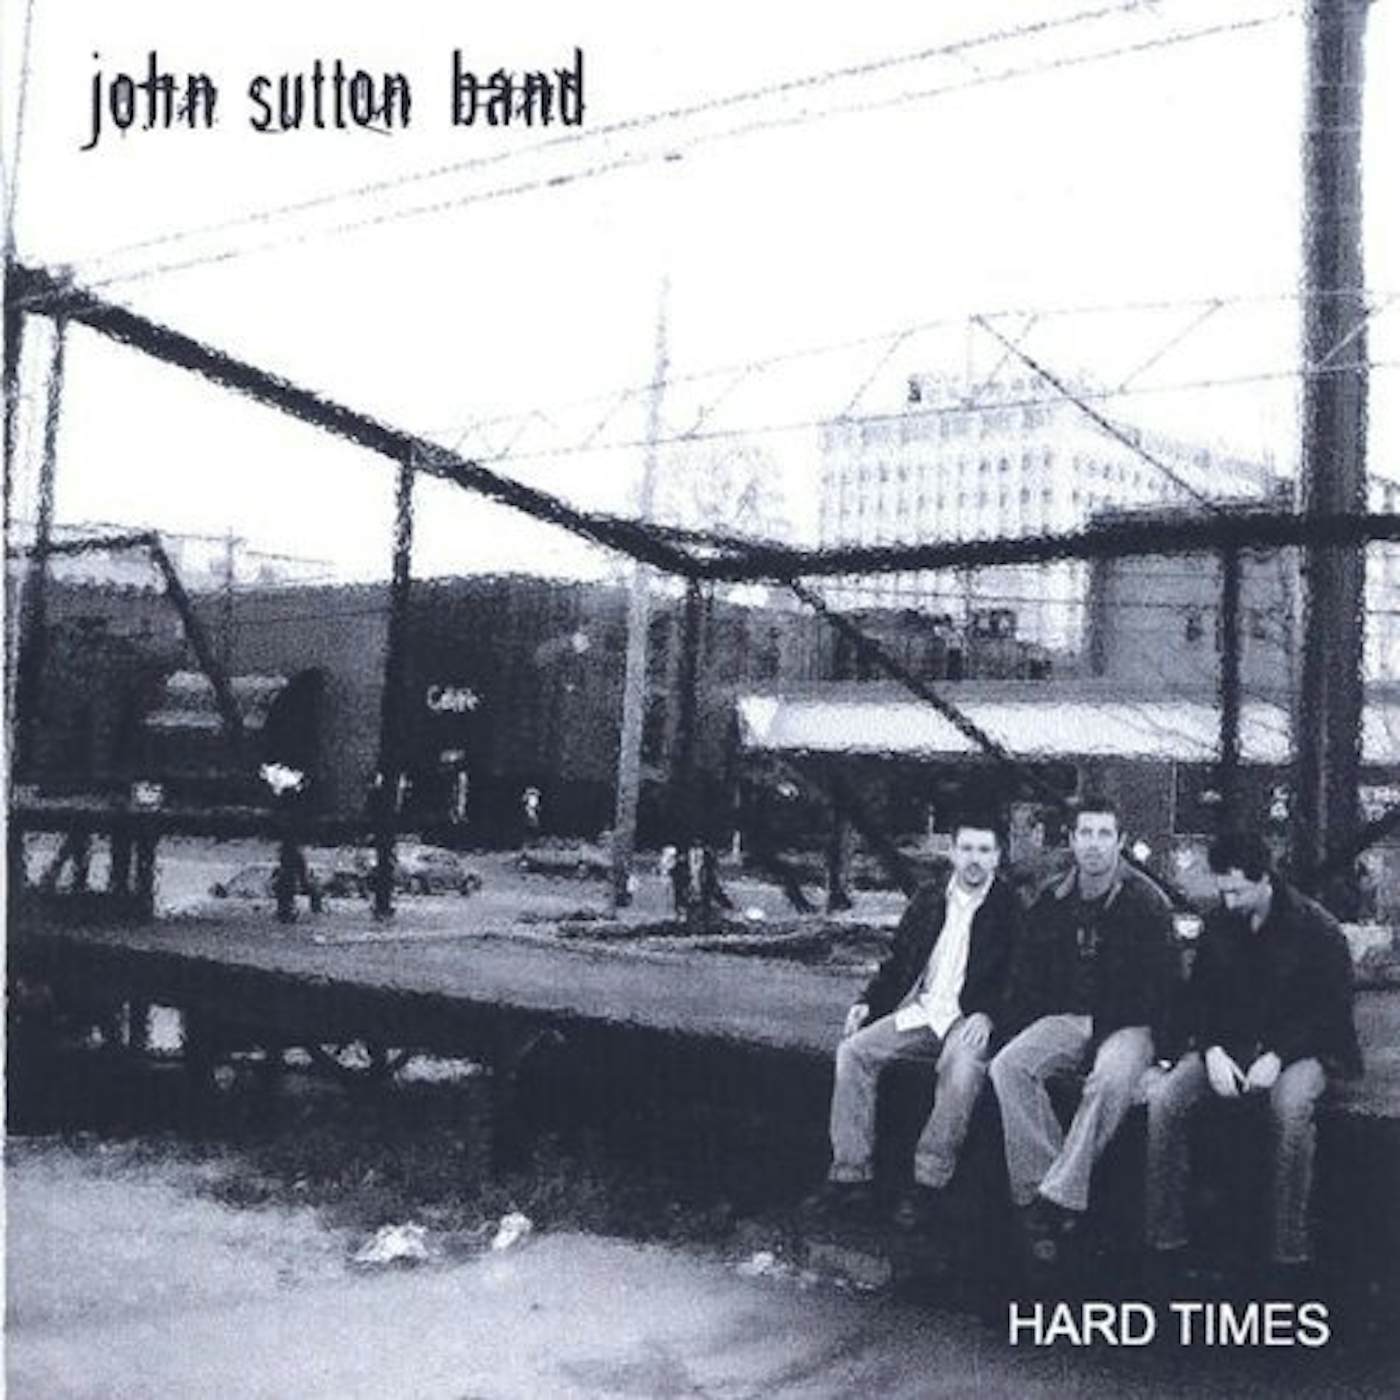 John Sutton Band HARD TIMES CD